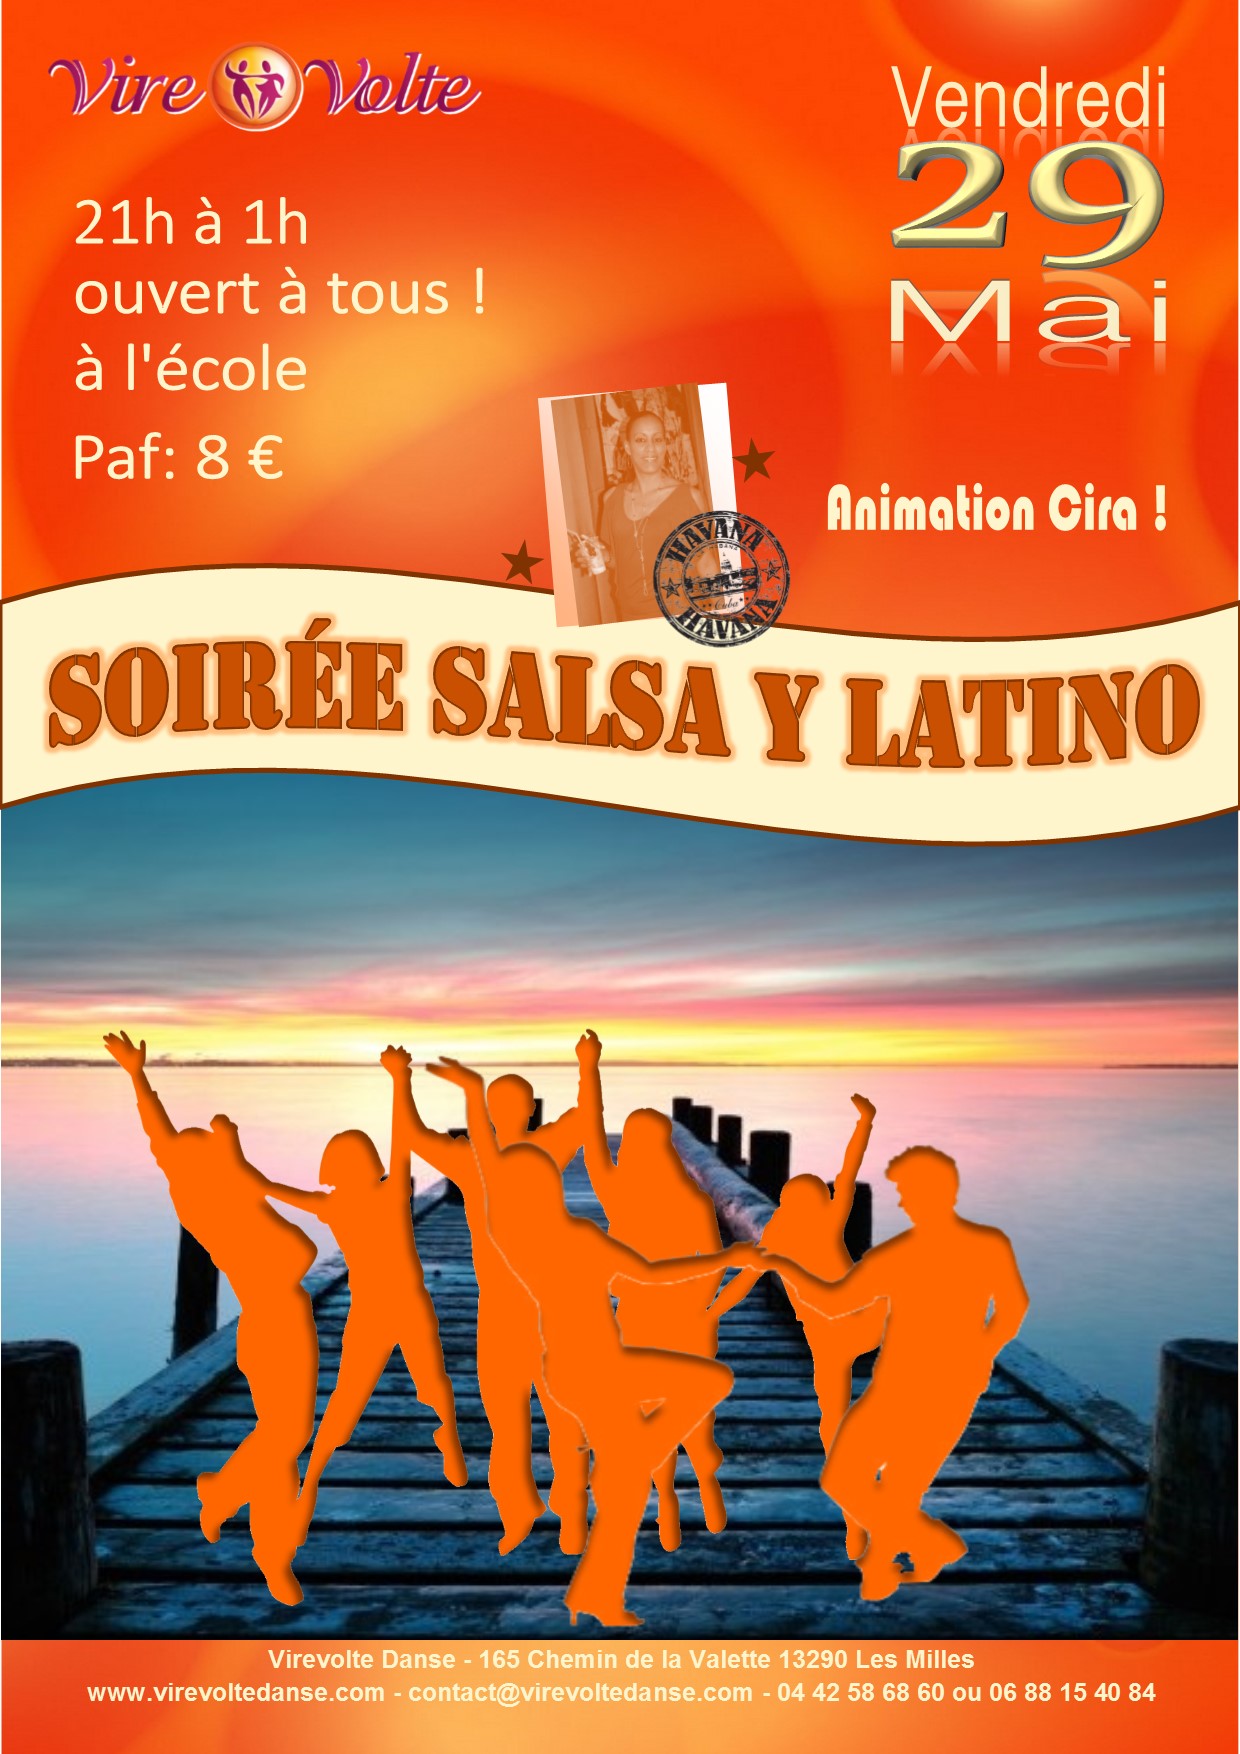 SoirÃ©e Salsa y Latino only!